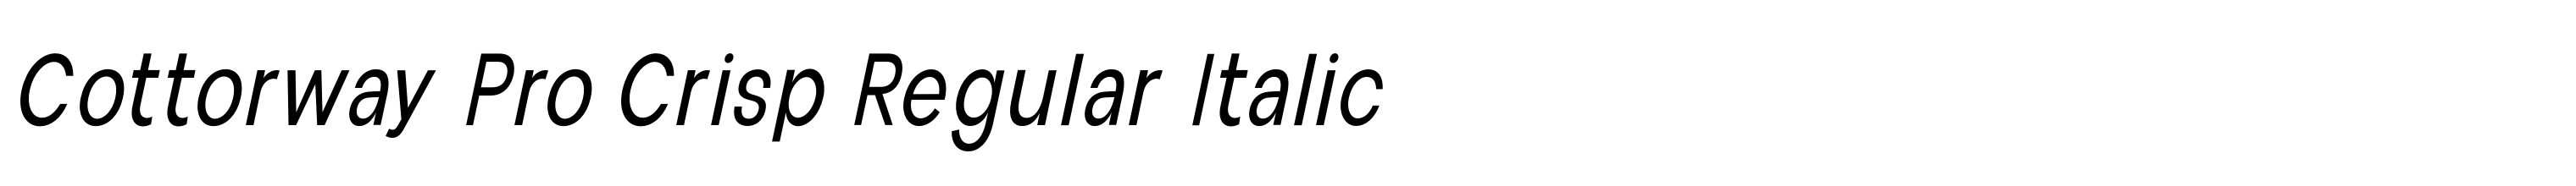 Cottorway Pro Crisp Regular Italic